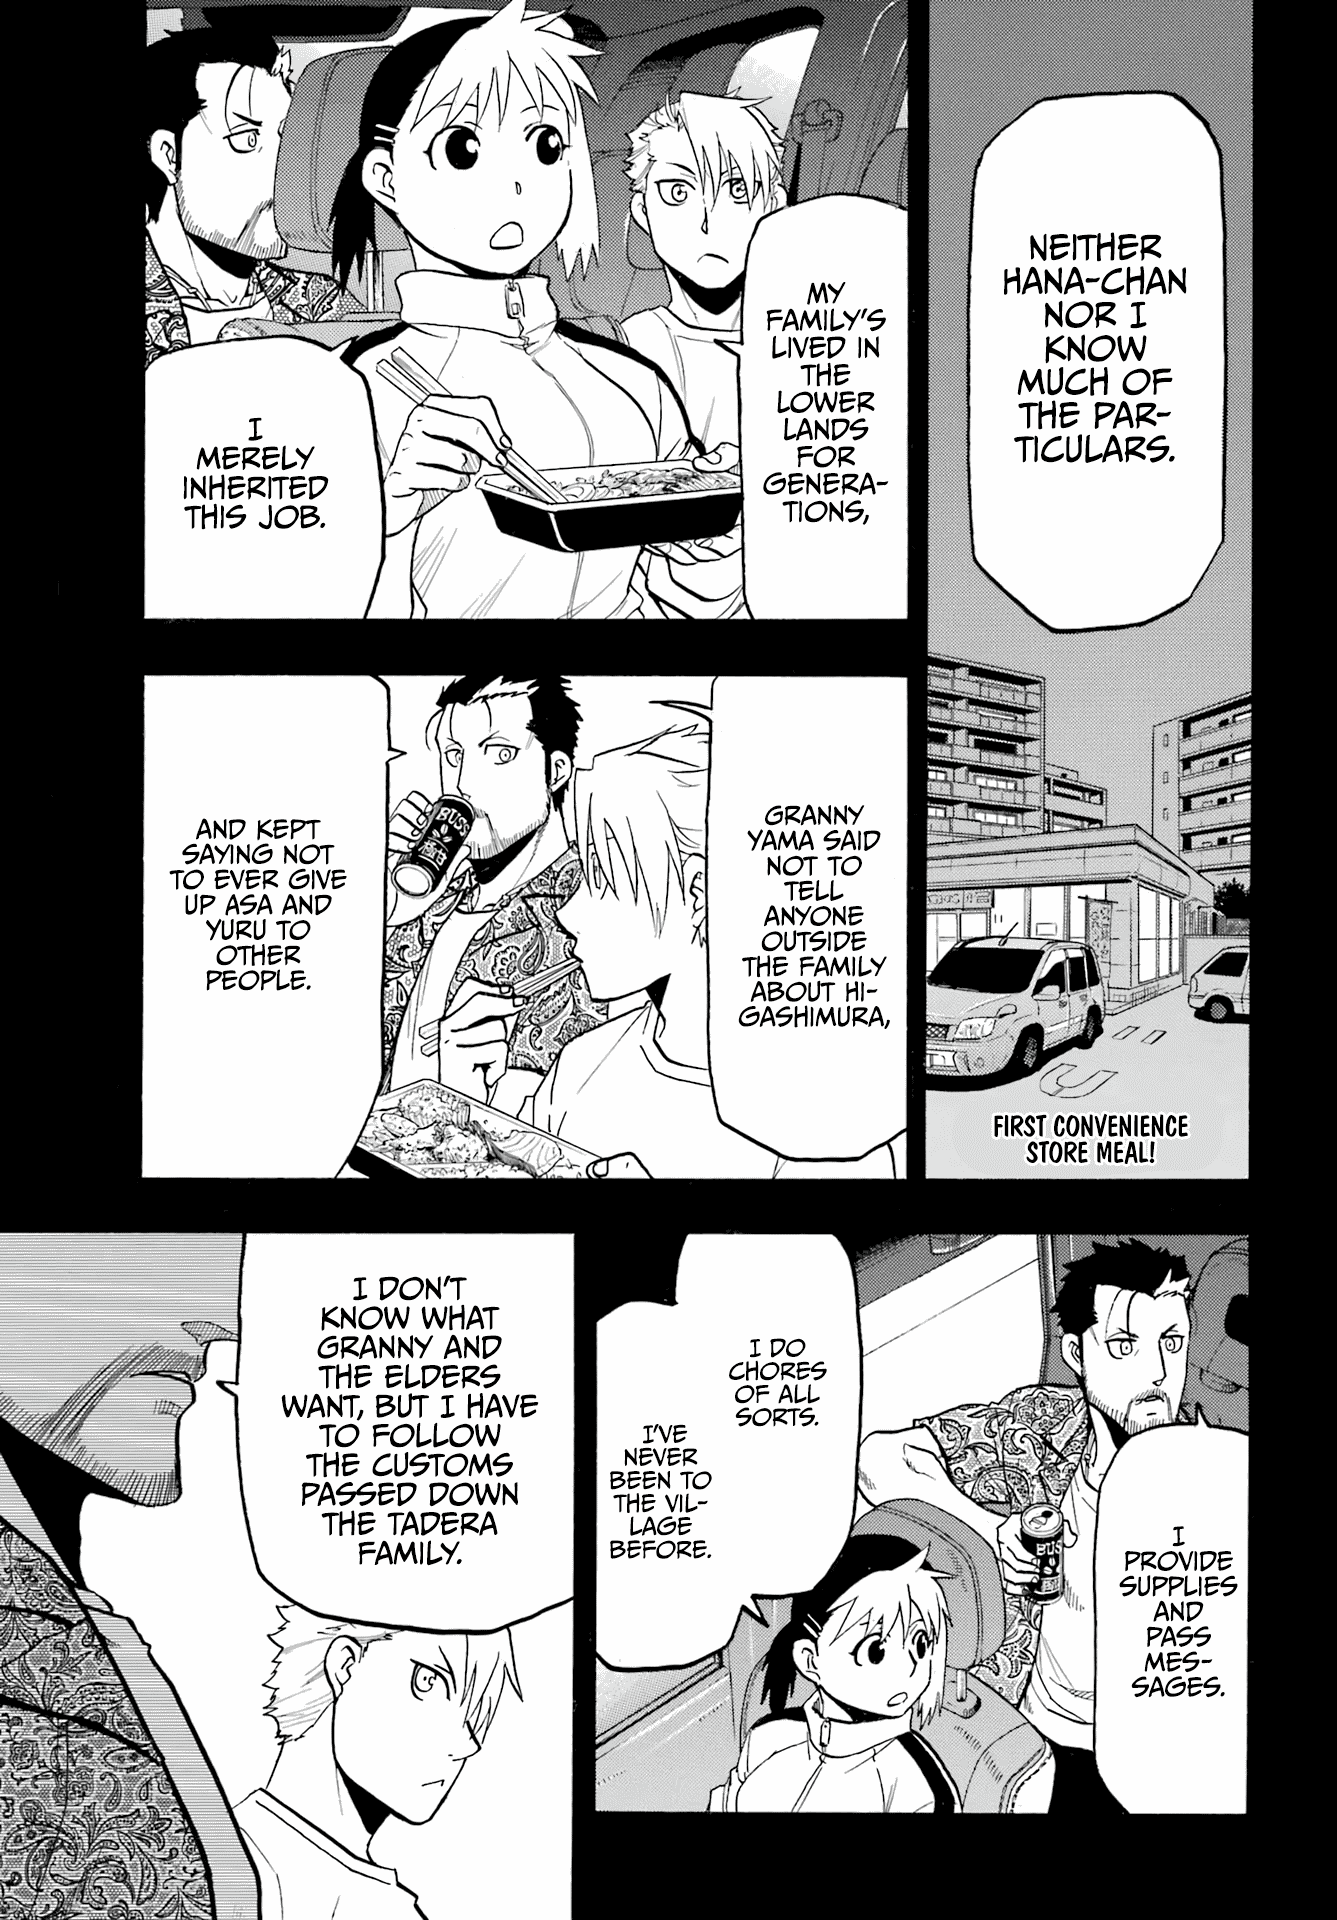 Yomi No Tsugai - Page 2